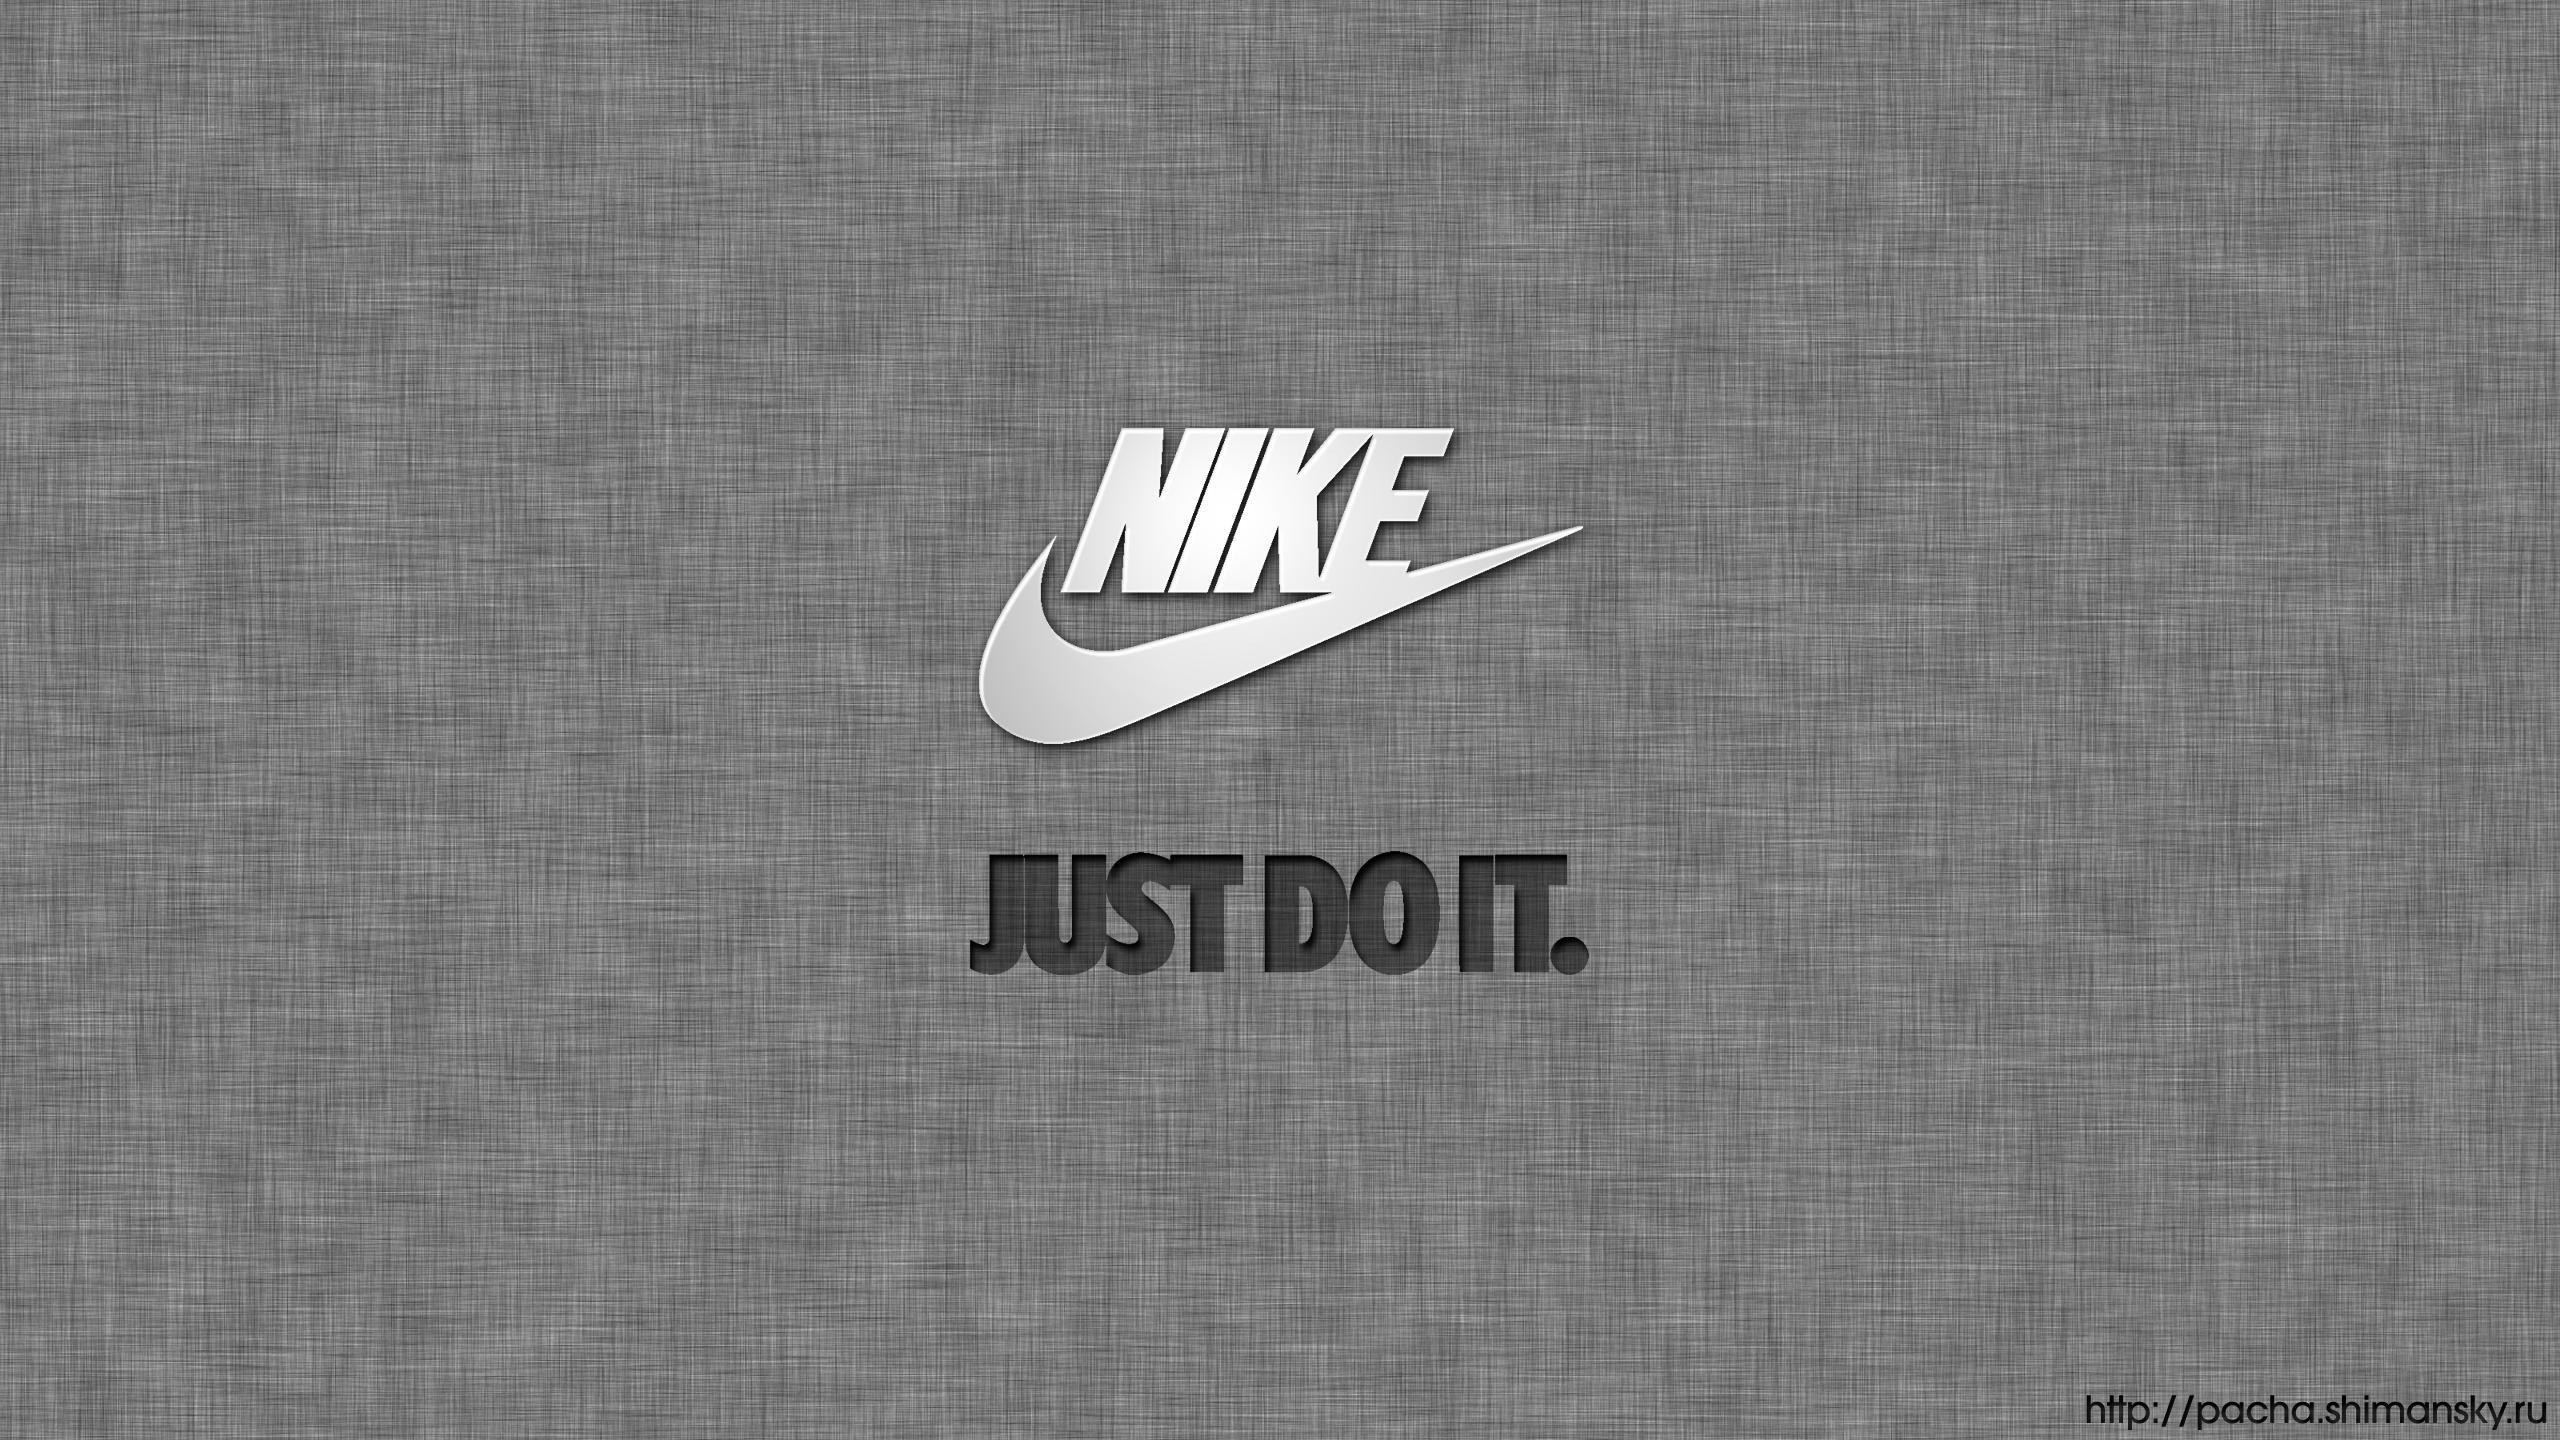 2560x1440 Logo : Nike Wallpaper Hd 1440x2560px Nike Wallpaper. Nike .